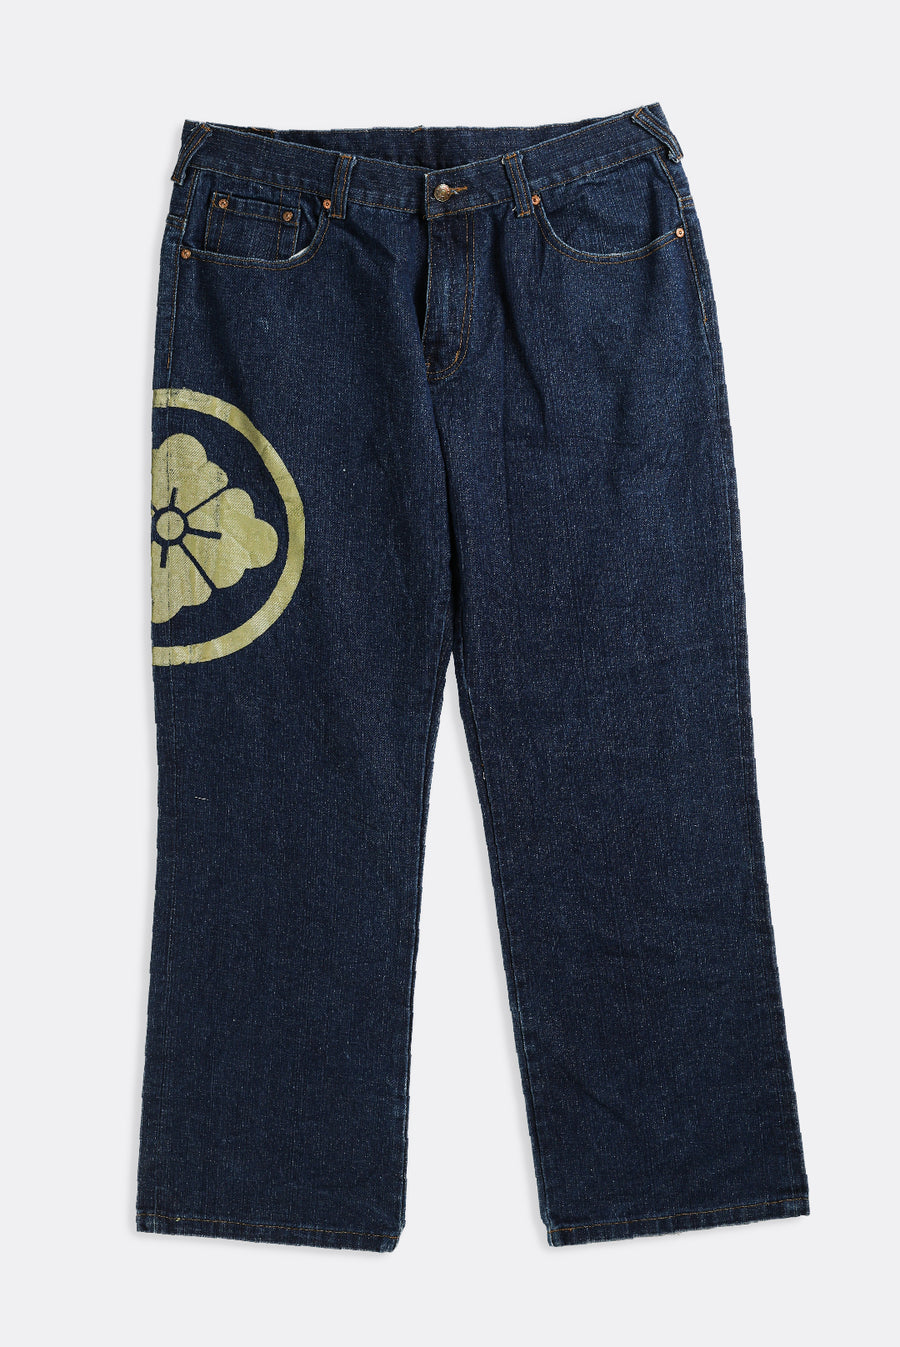 Vintage EVISU Denim Pants - W38